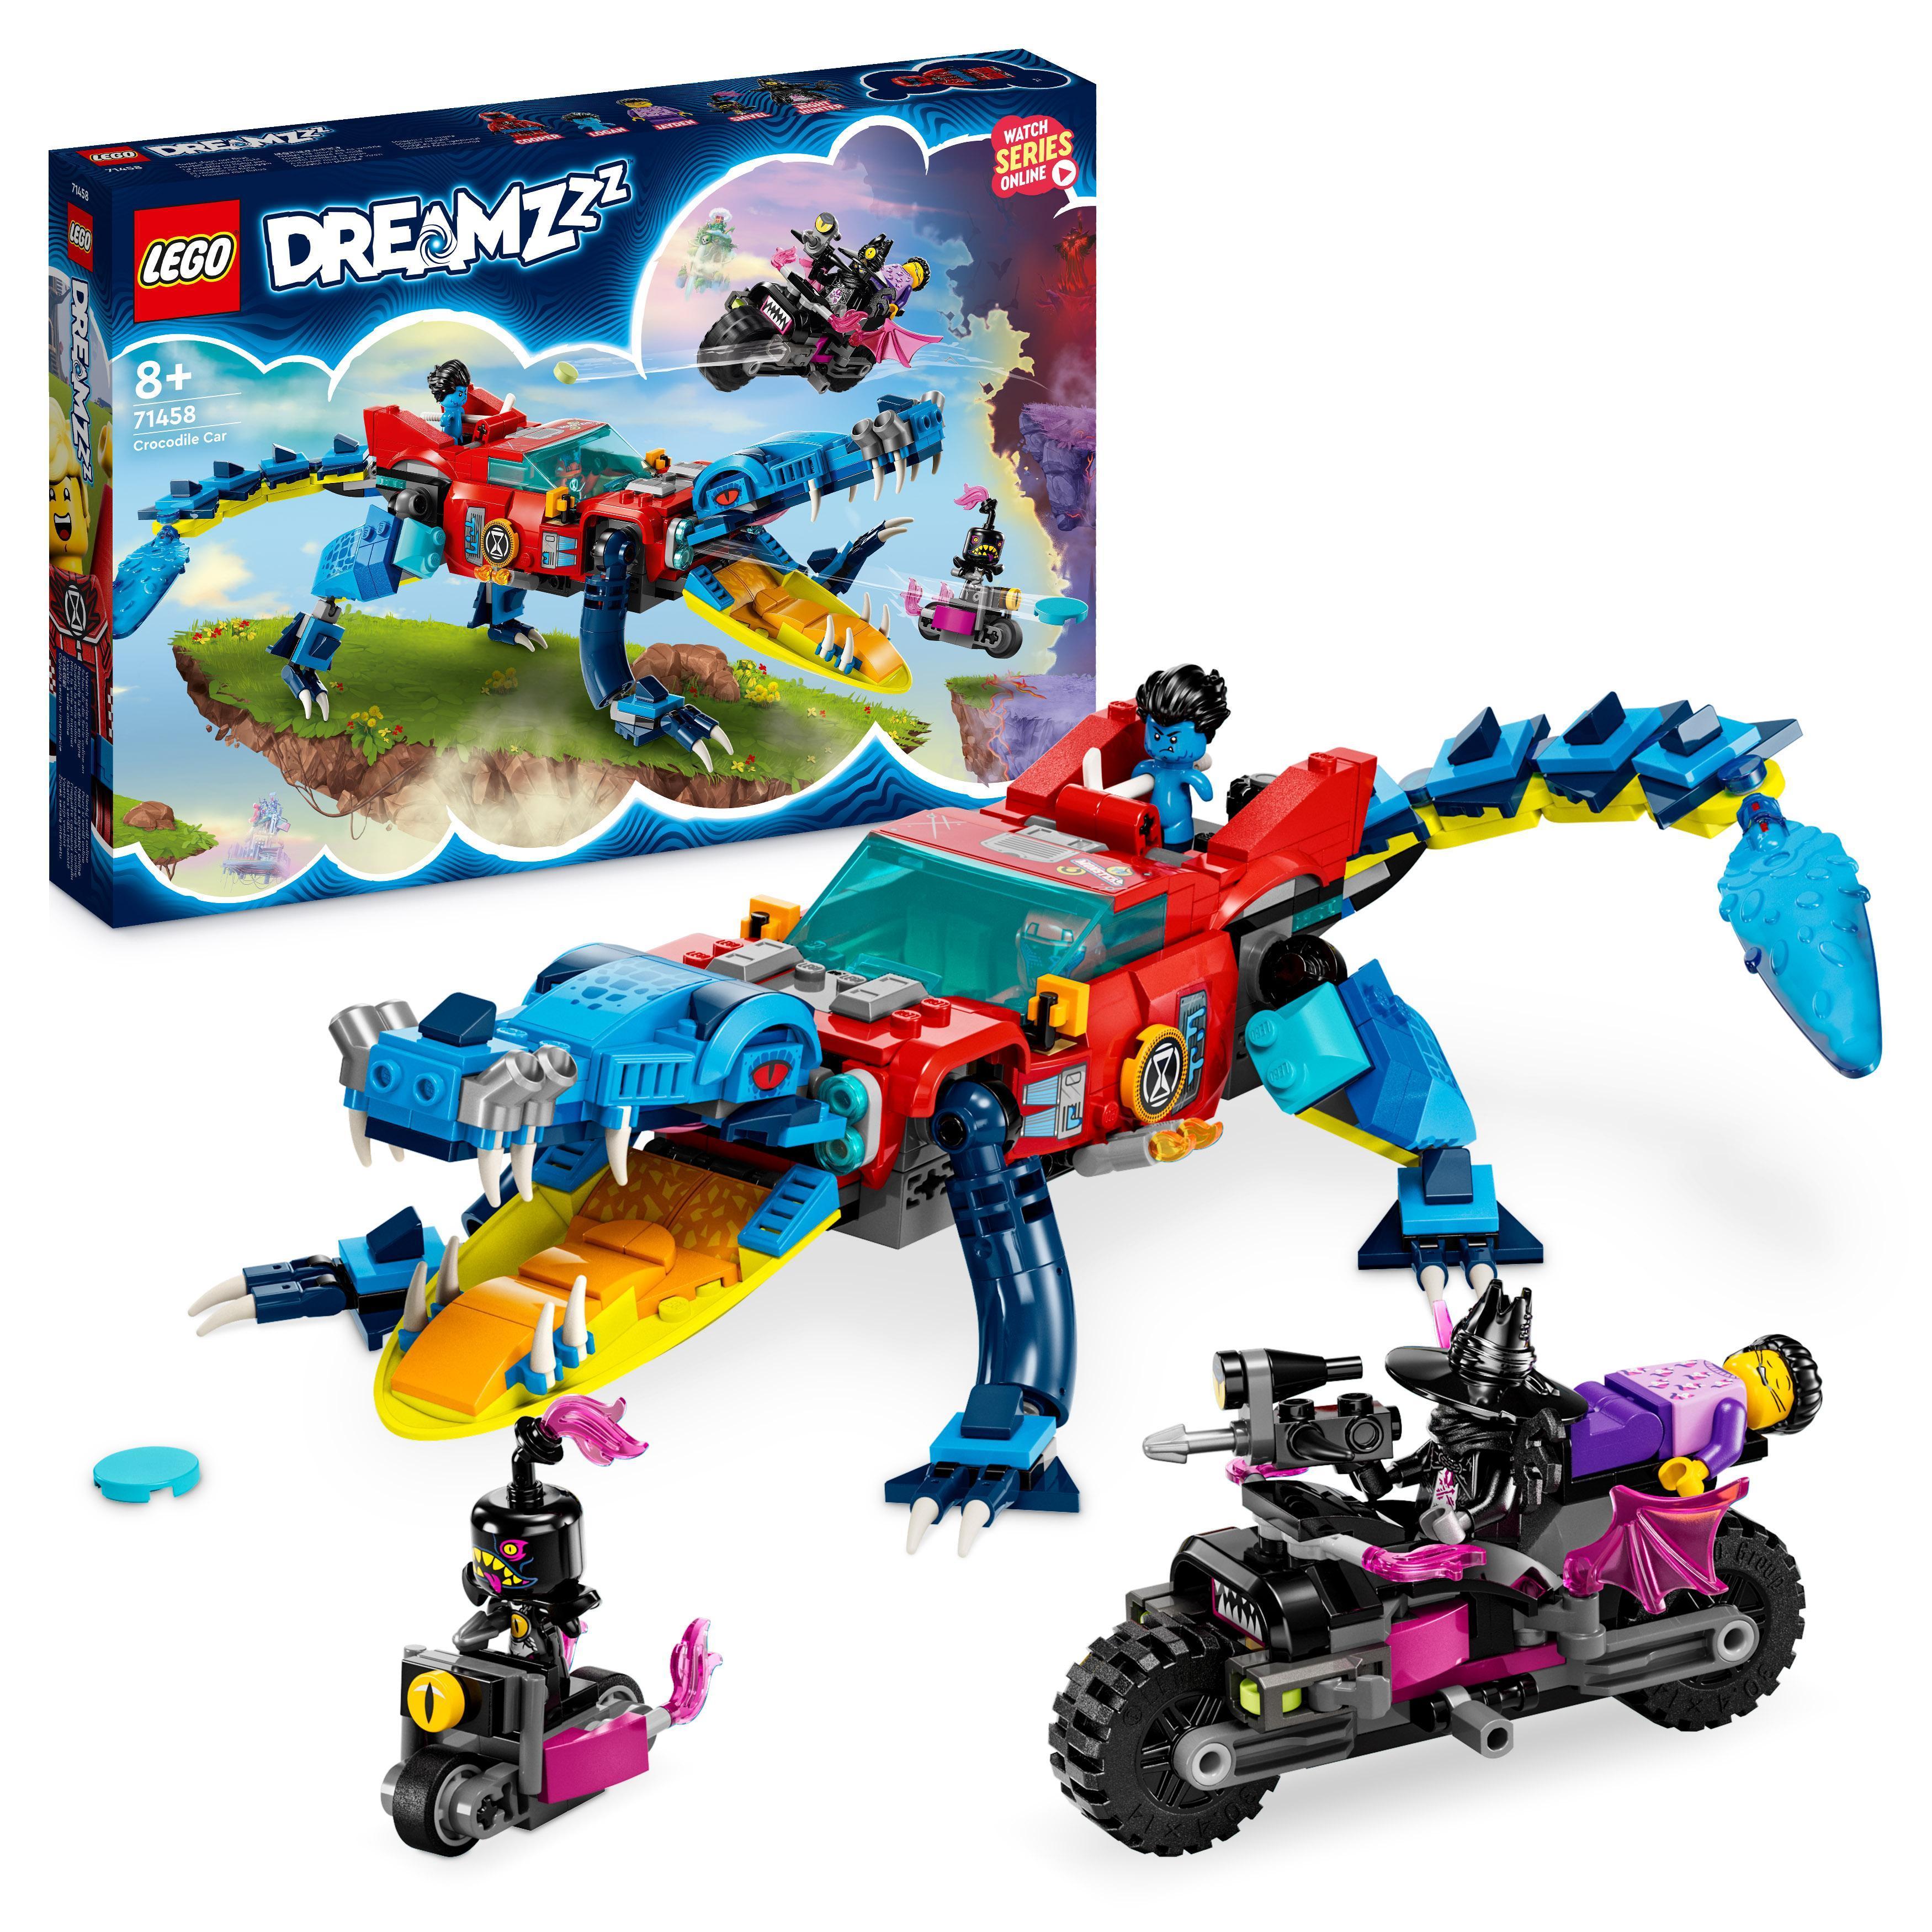 delikat sol unlock Køb LEGO DREAMZzz - Krokodillebil (71458) - Fri fragt